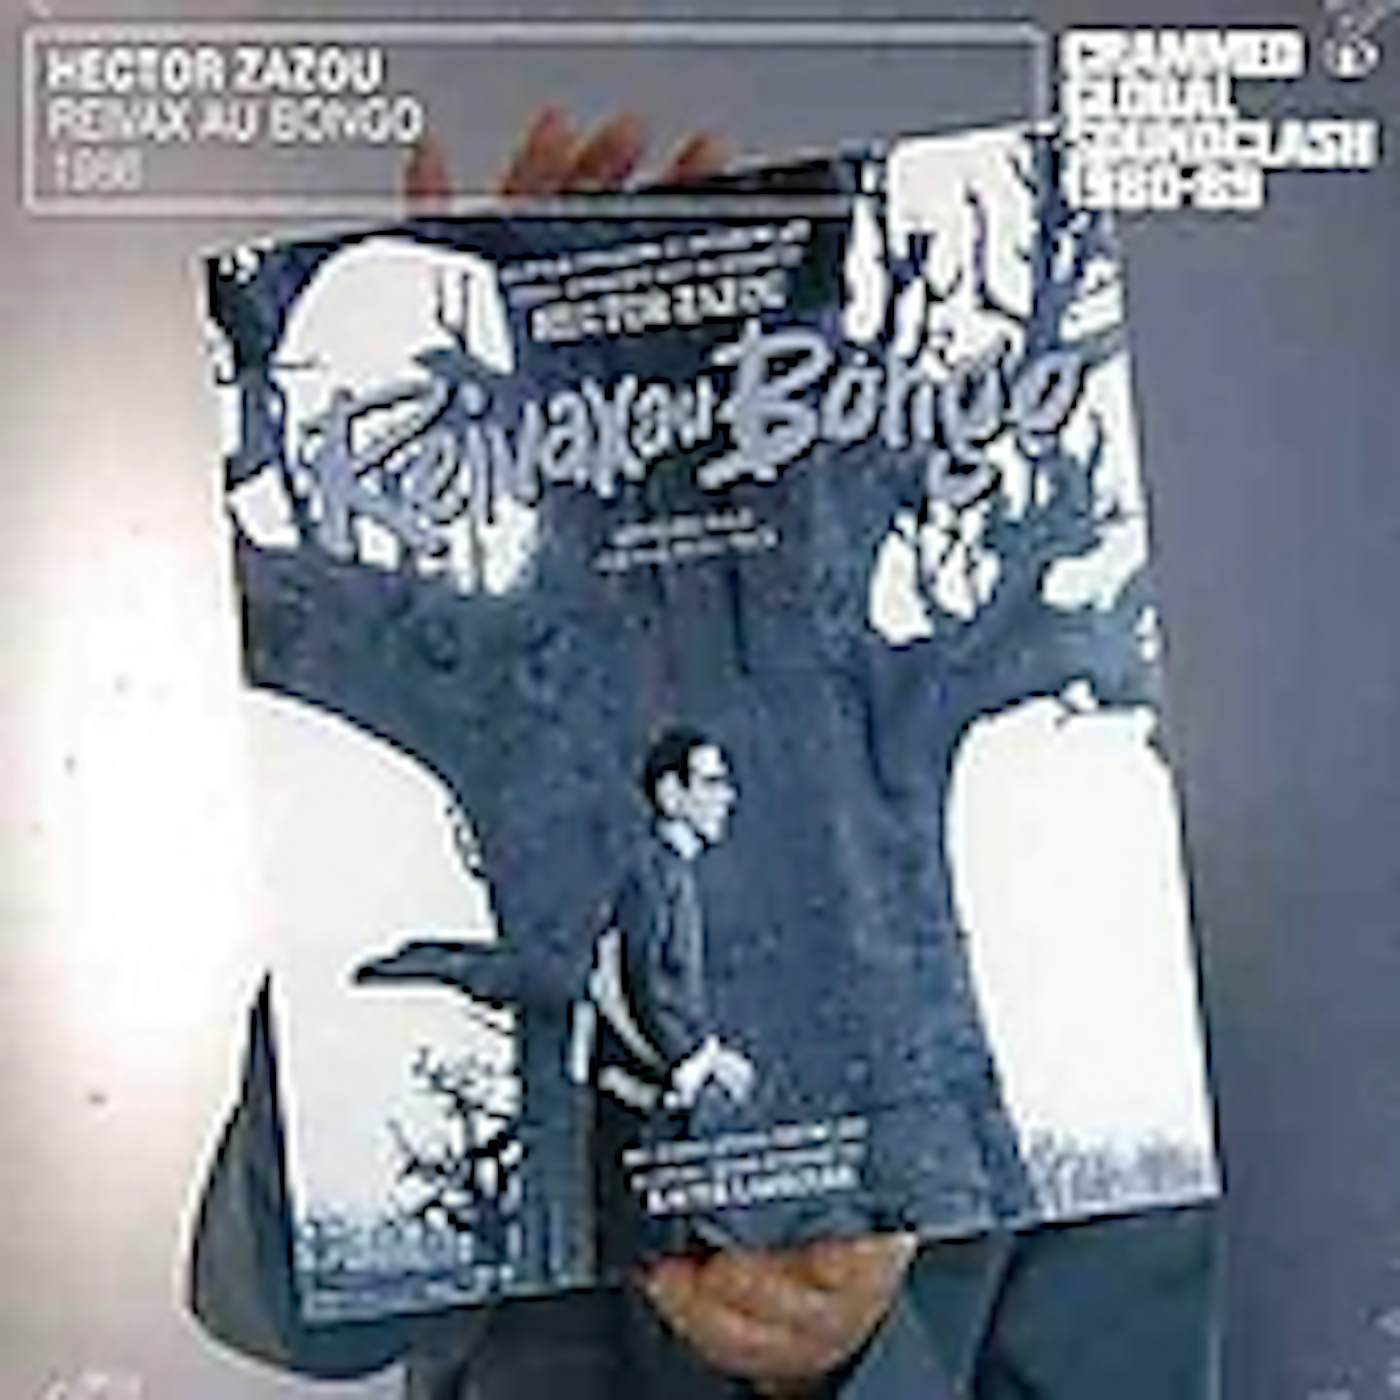 Hector Zazou REIVAX AU BONGO CD